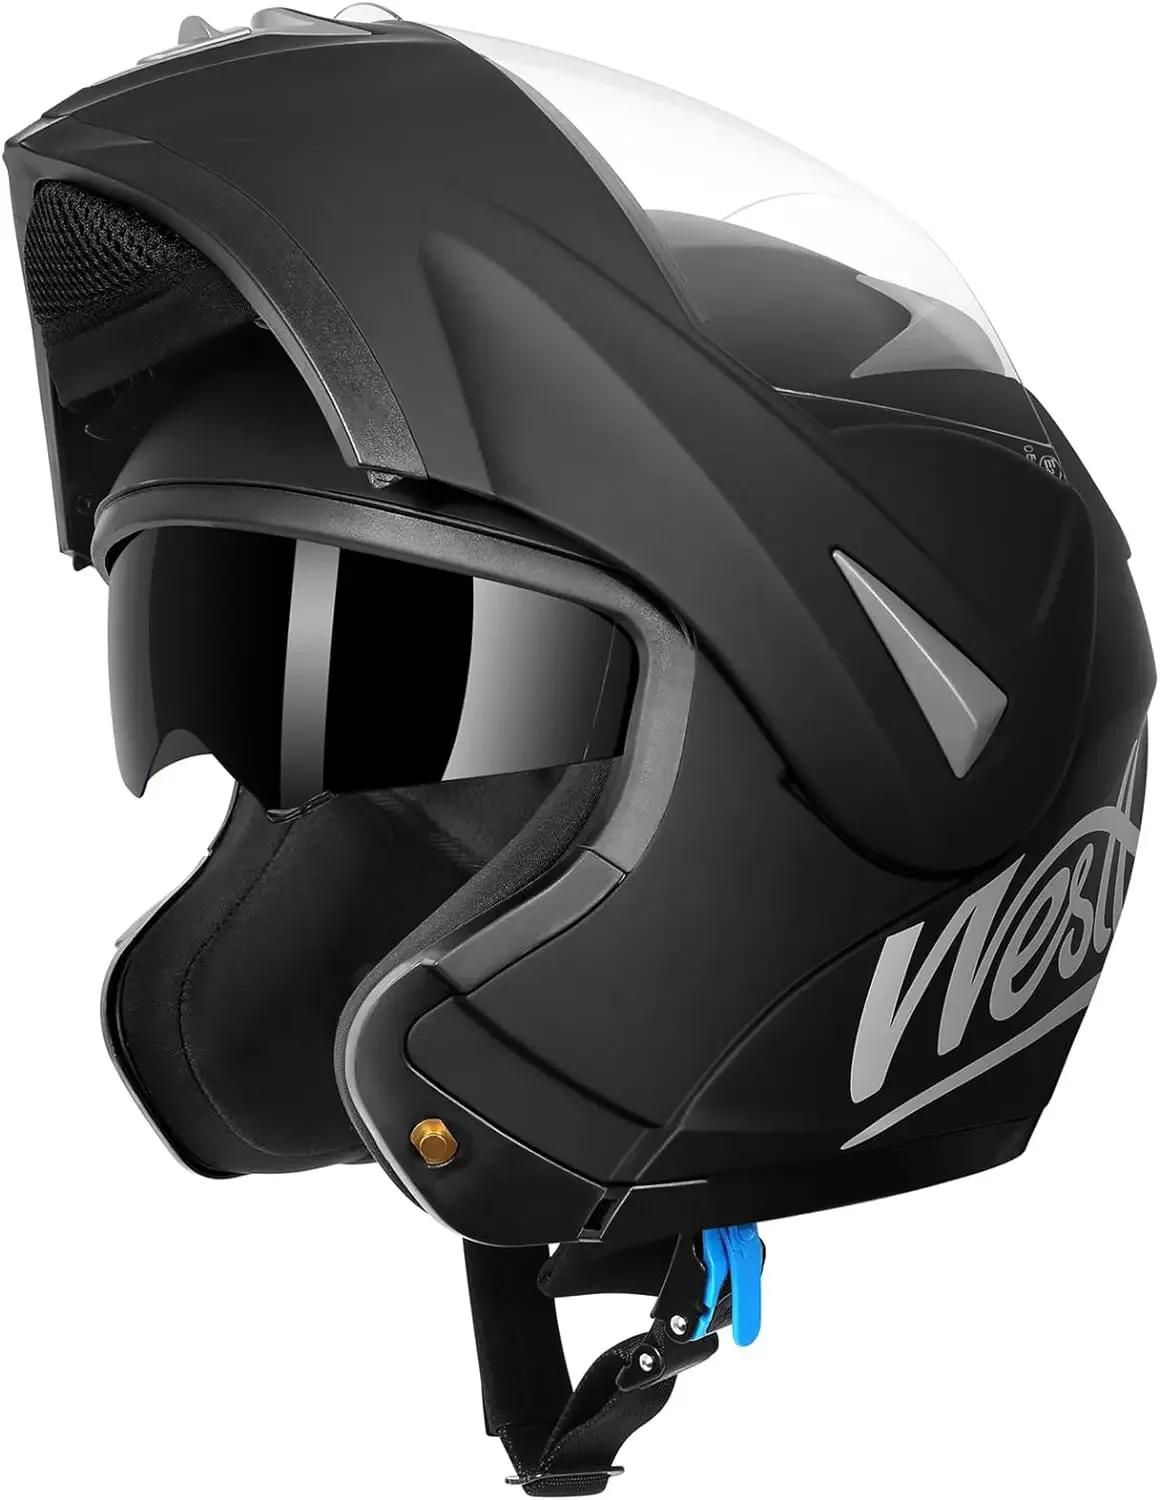 

Stylish Dual Visor Full Face Motorcycle Helmets for Adults - Premium Modular Motorbike Helmet for Men & Women - ATV Helmet with